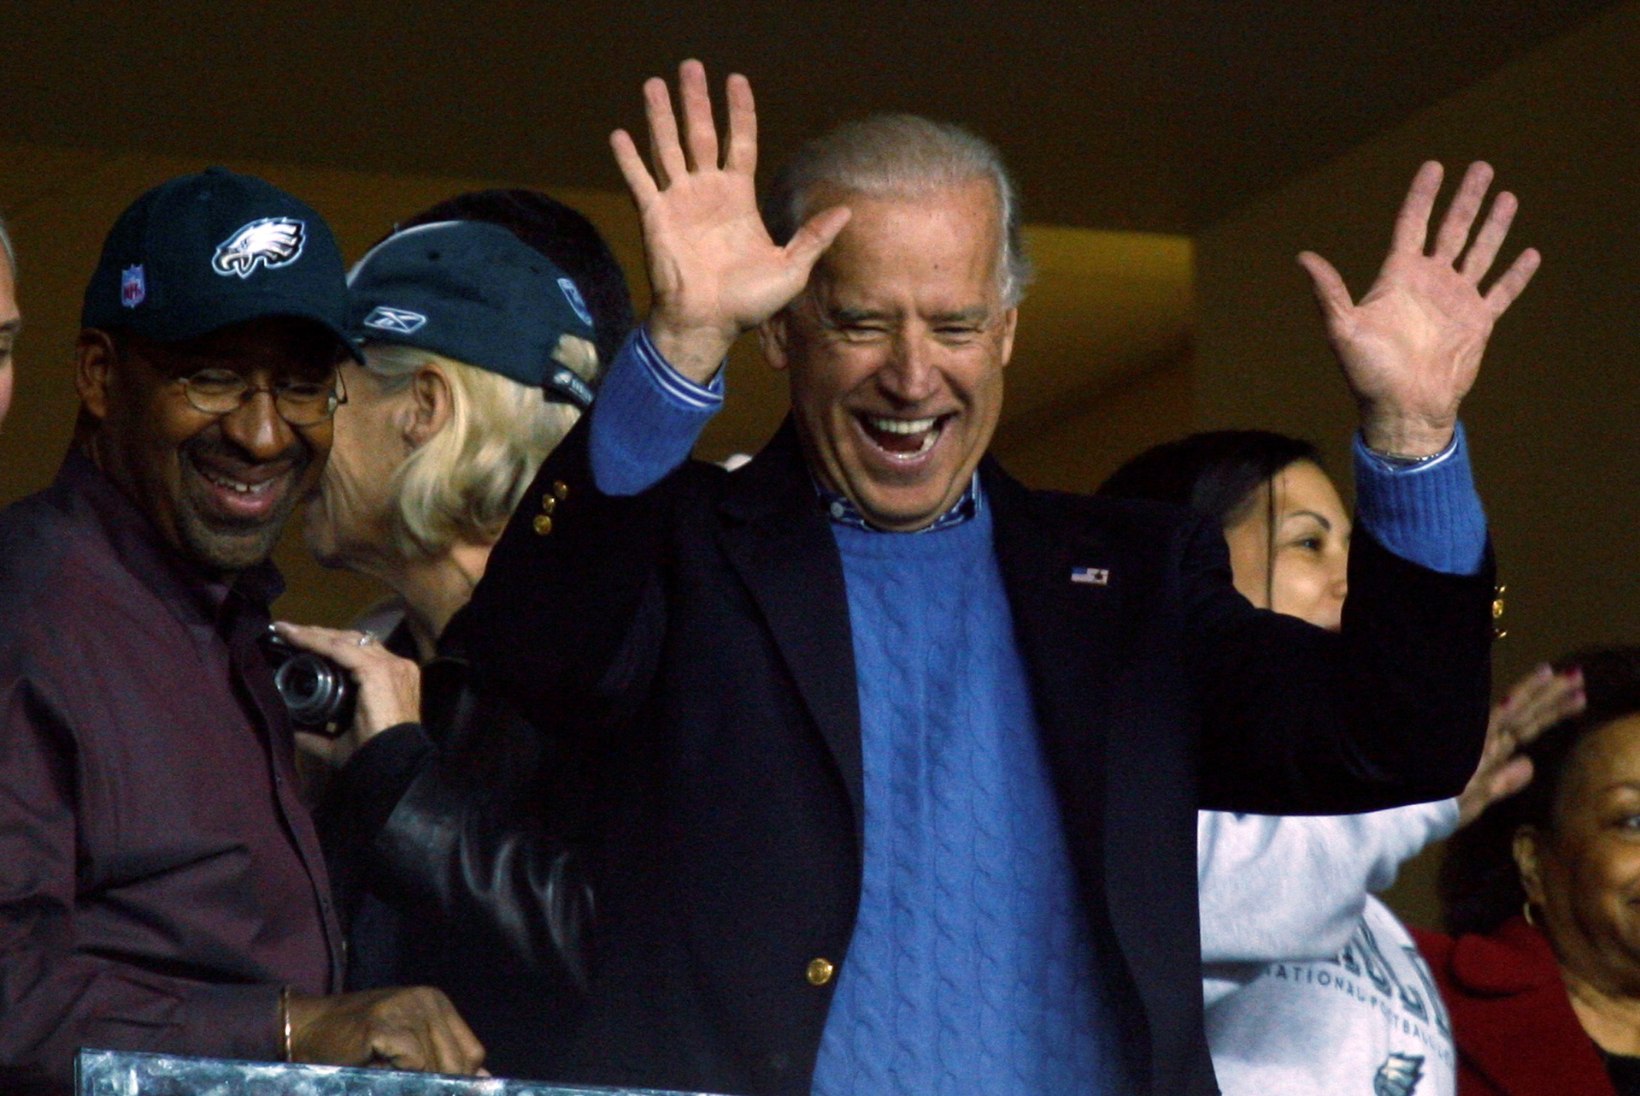 Joe Bideni traagiline armastus röövis Ameerika Ühendriikidelt silmapaistva sportlase